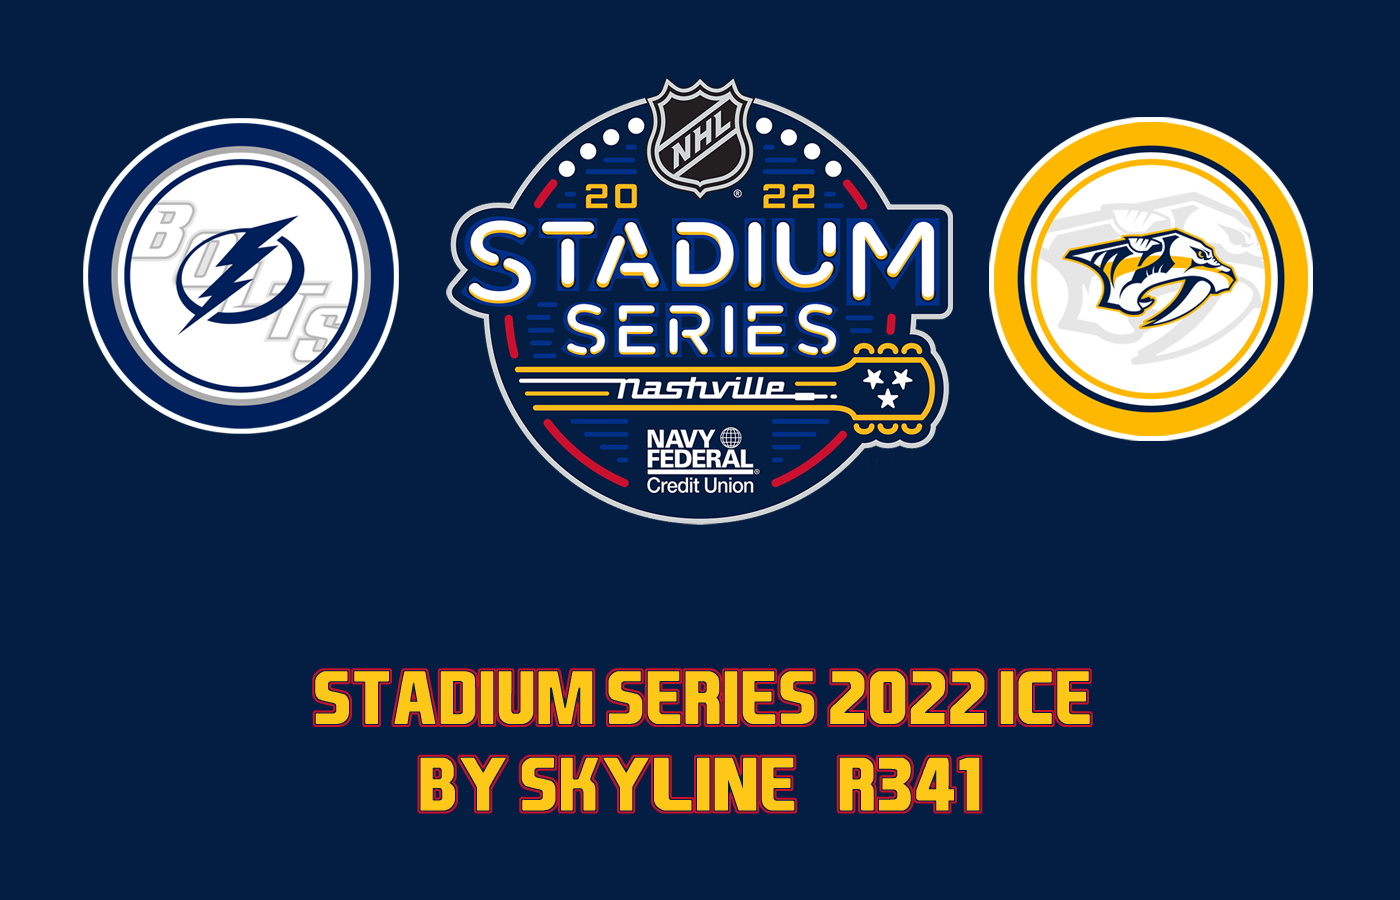 NHL Stadium Series 2022 Ice